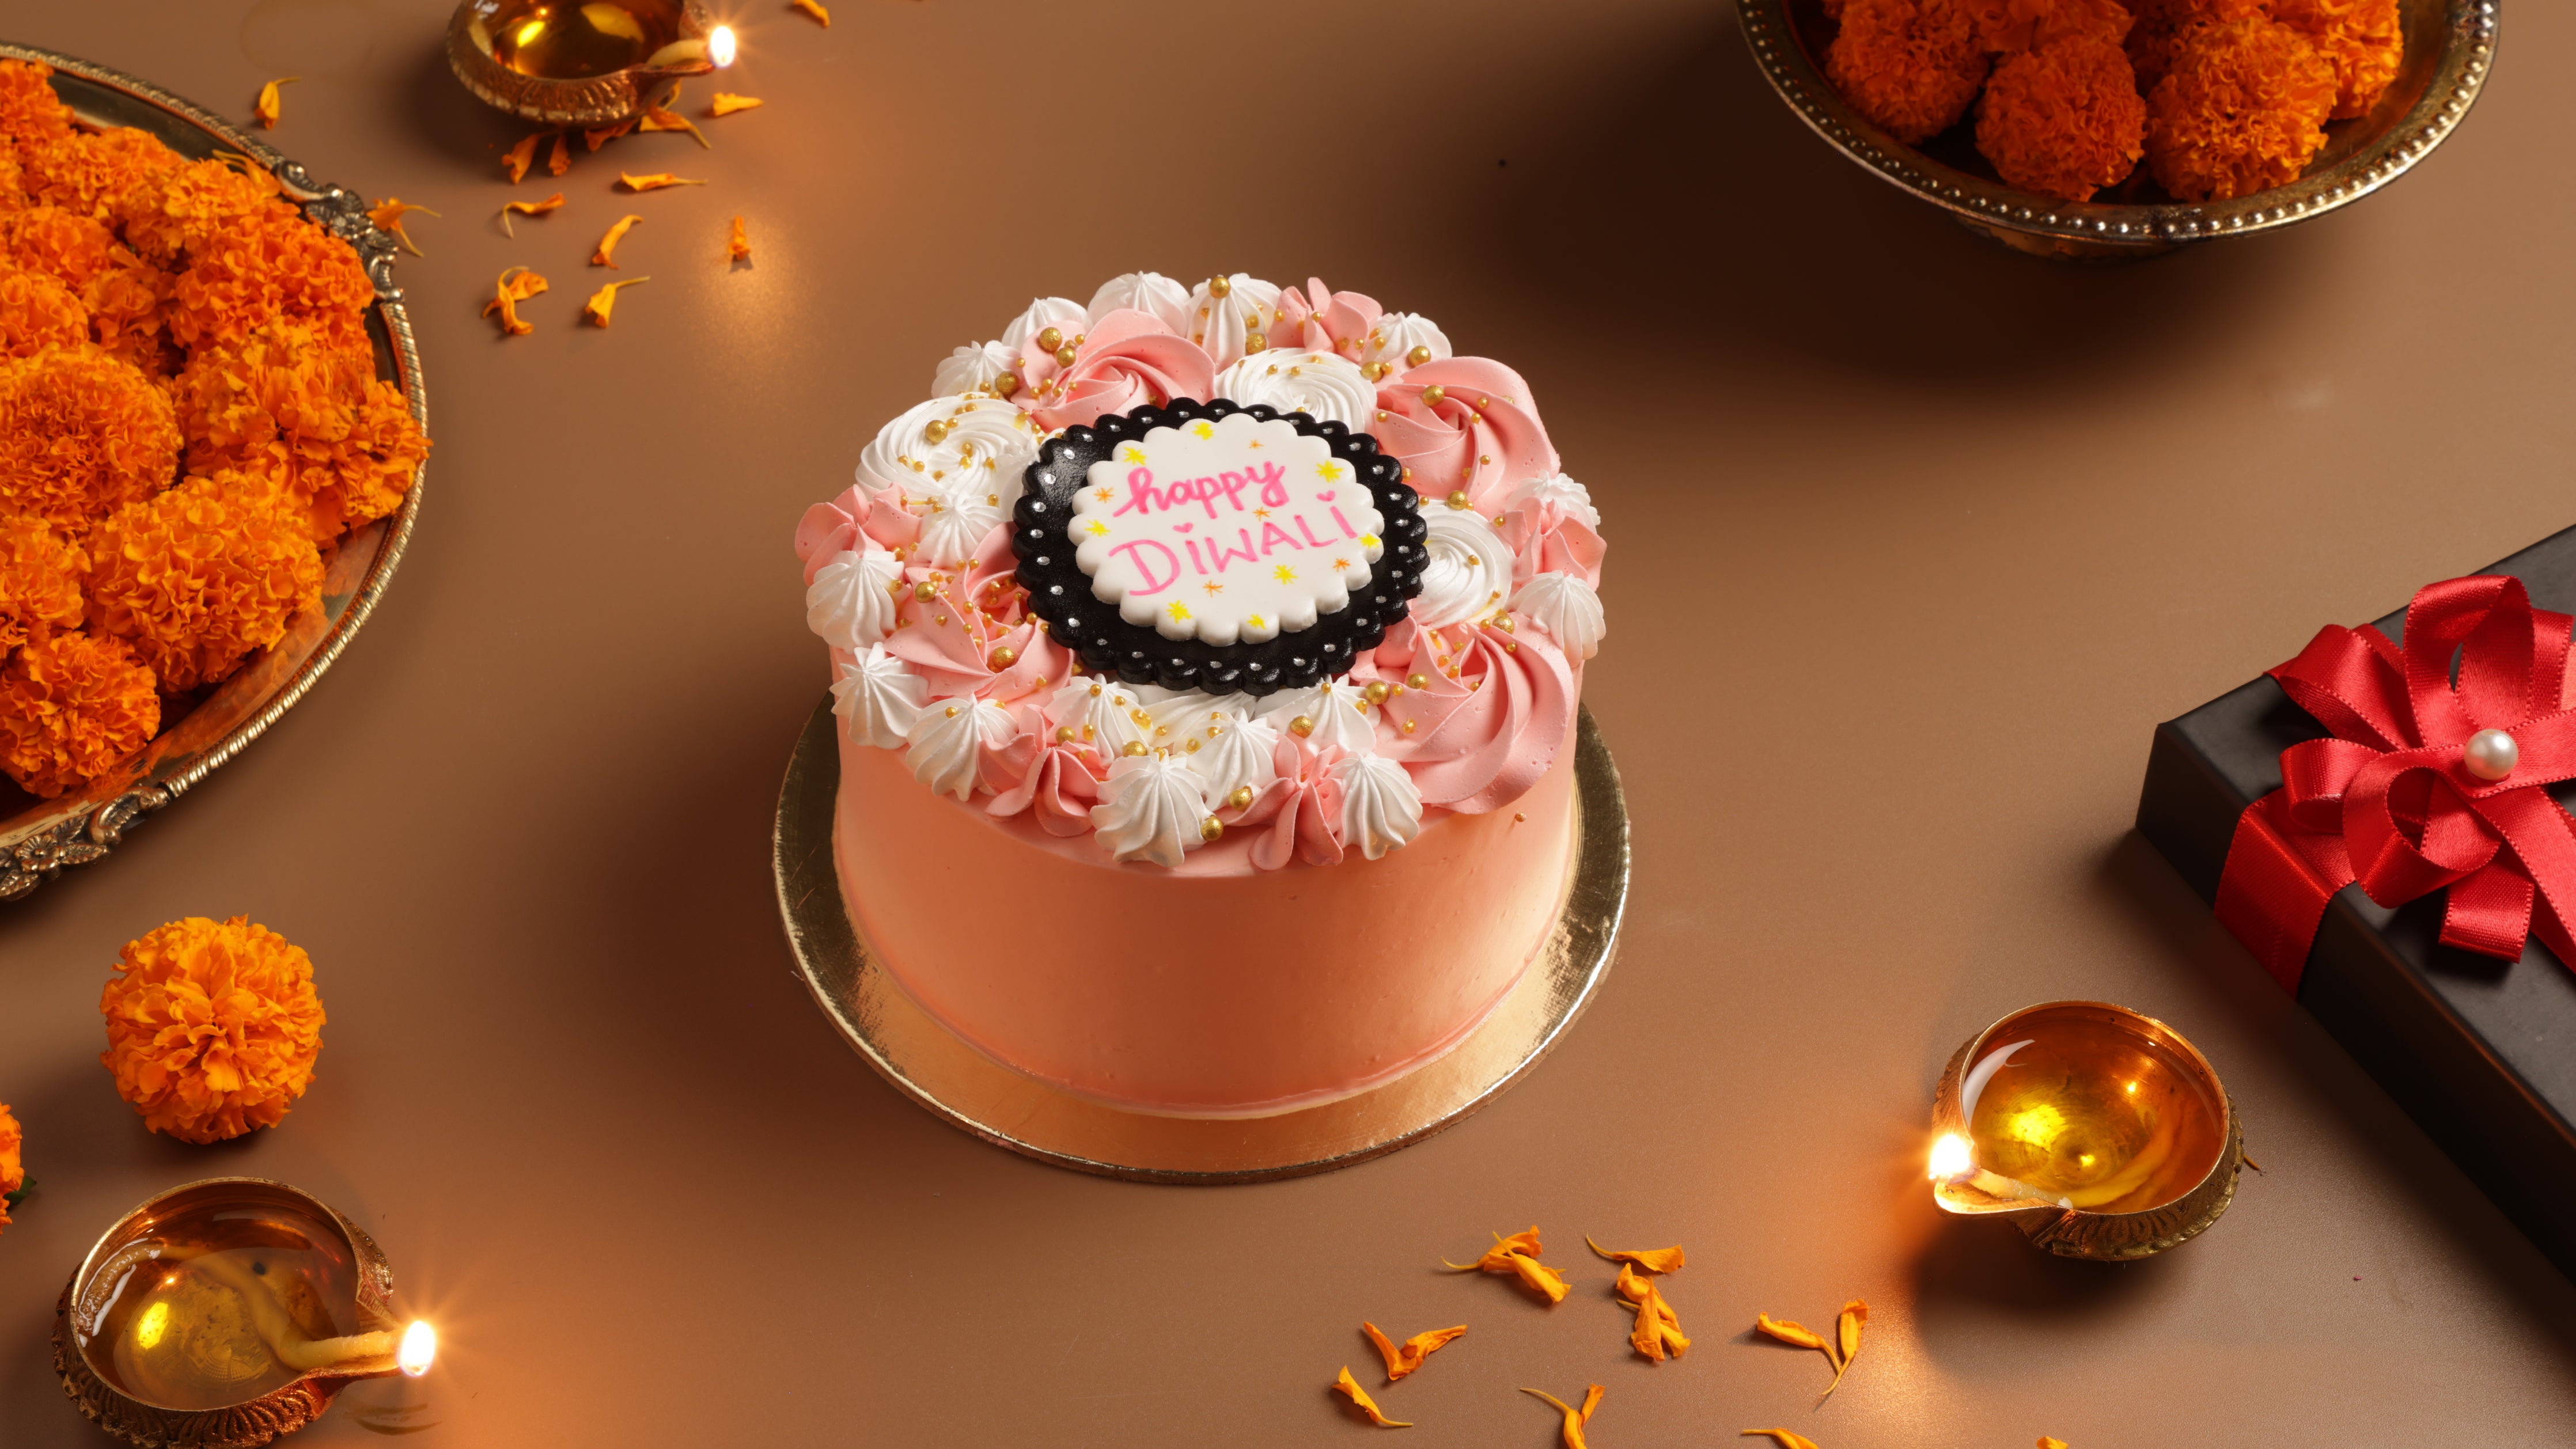 Buy/Send Happy Diwali Chocolate Cake Online @ Rs. 1999 - SendBestGift